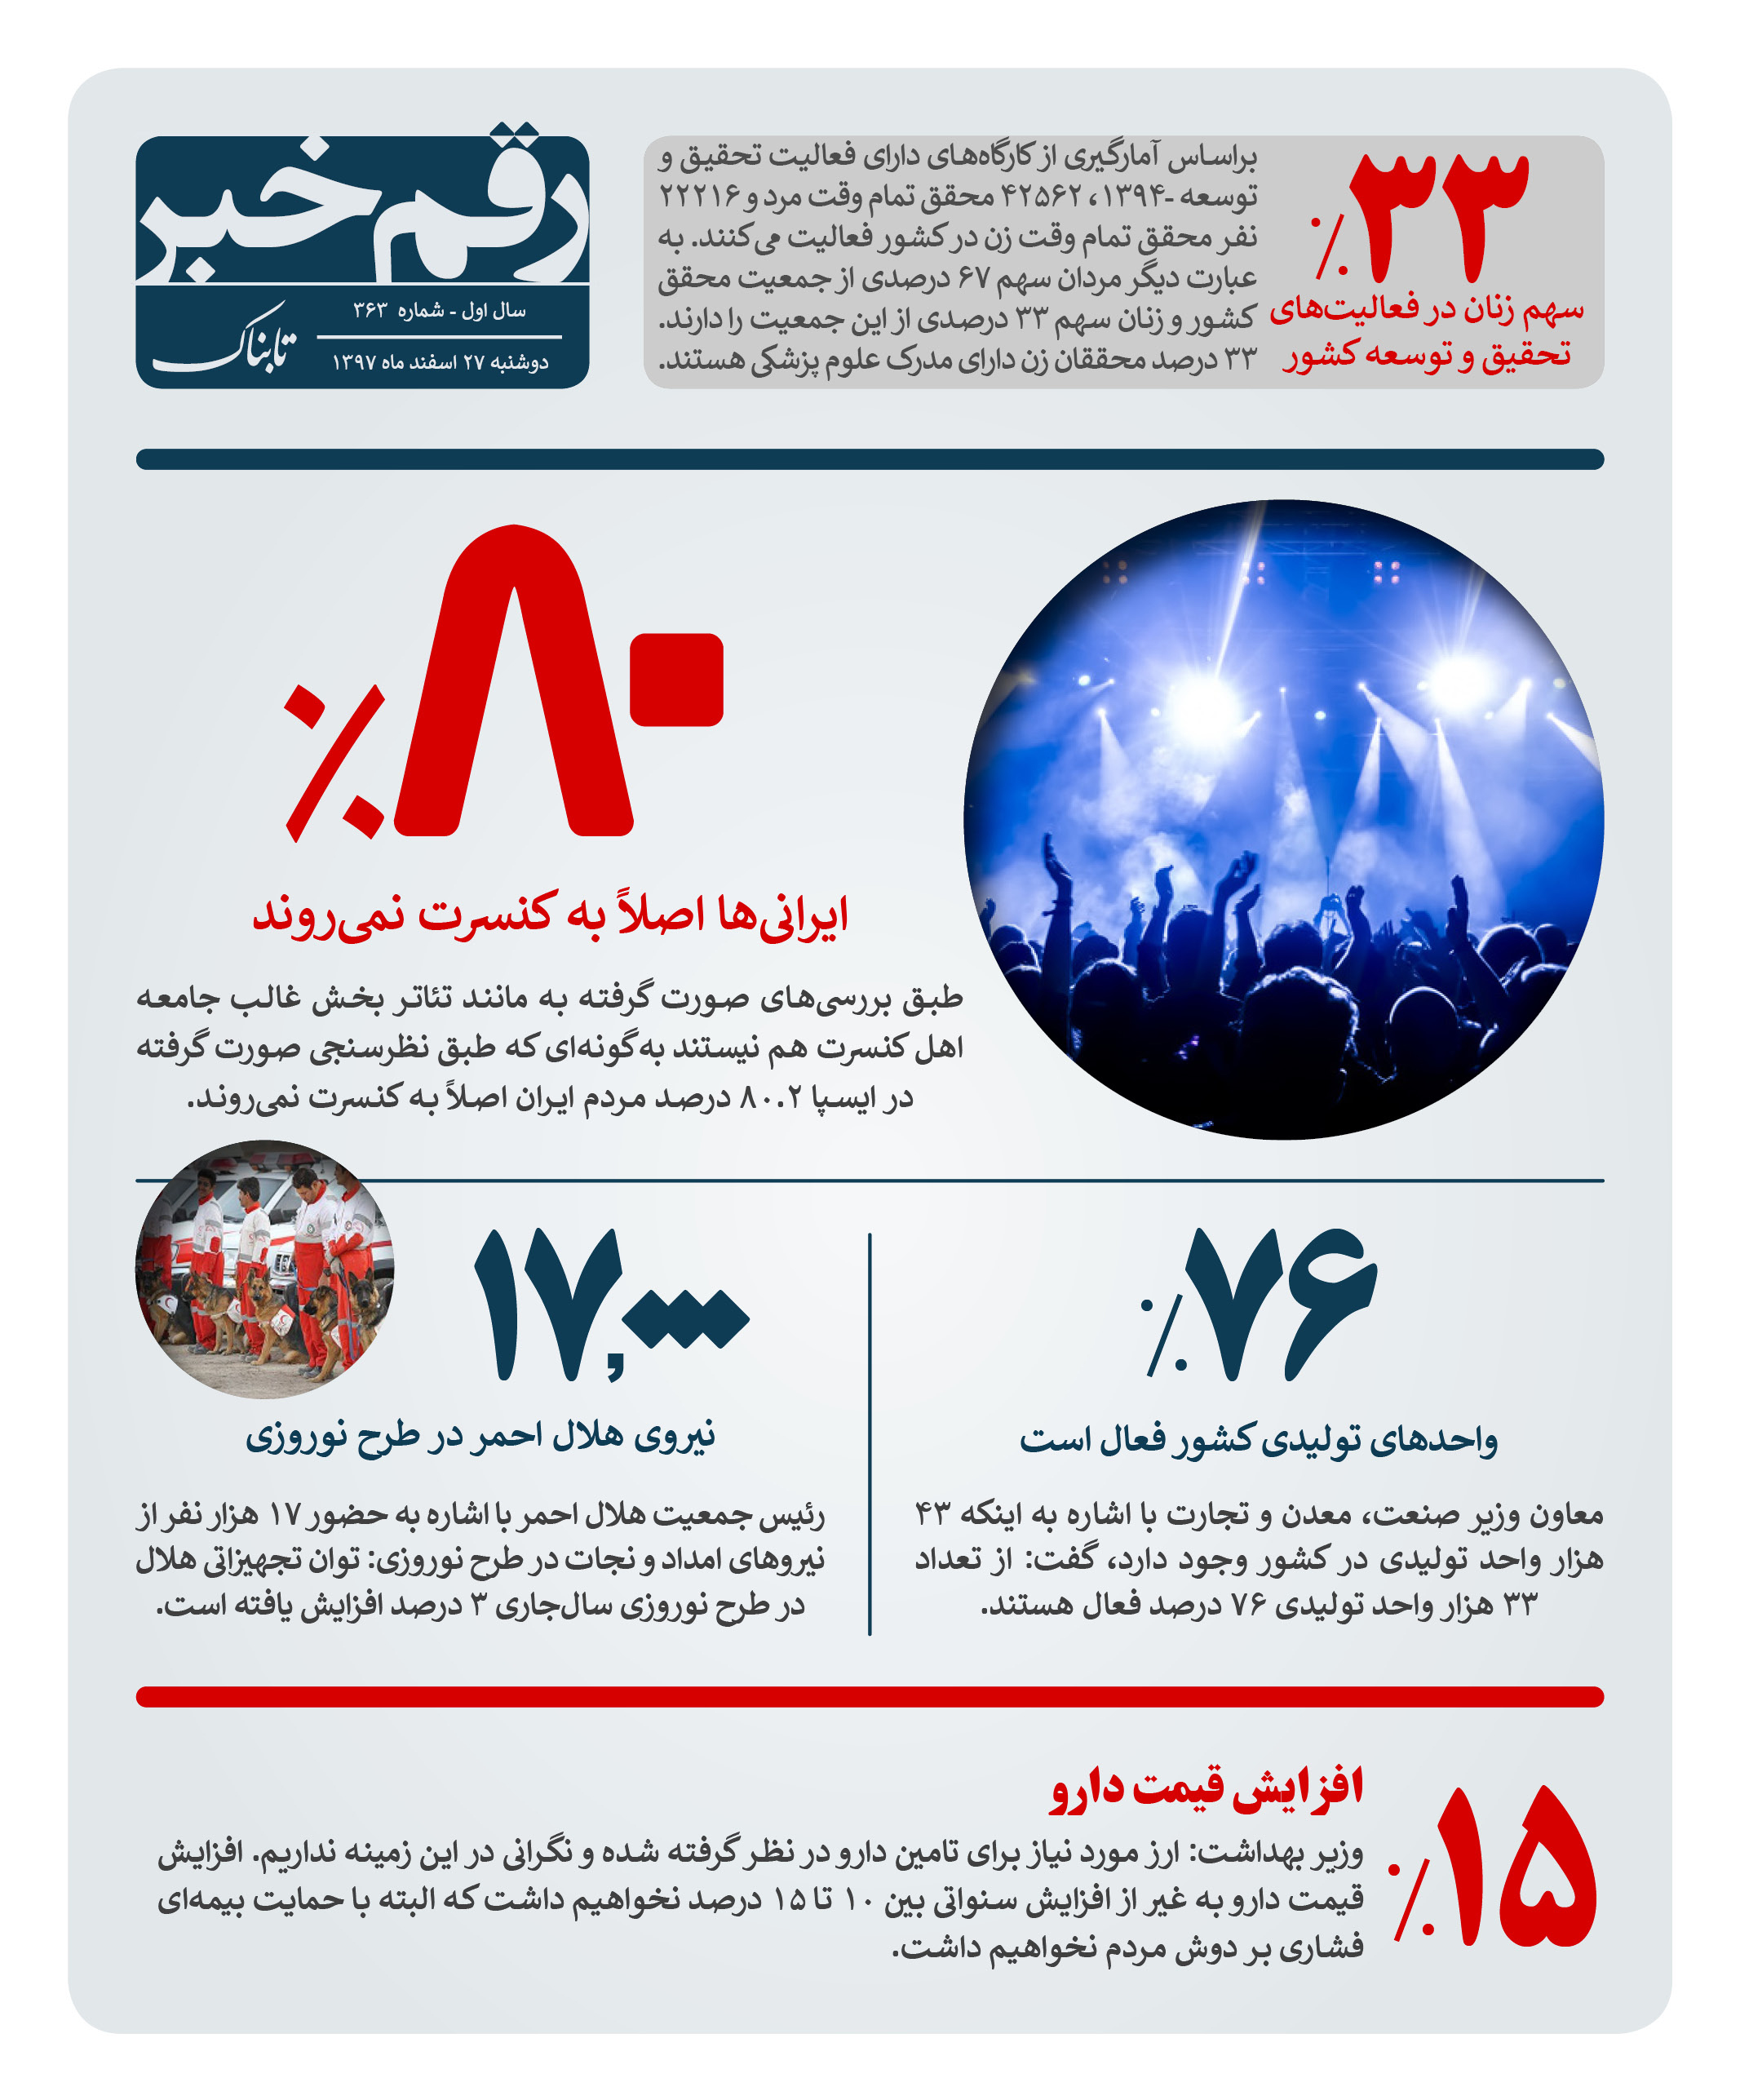  			 				 					رقم خبر: چند درصد ایرانی ها به کنسرت نمی روند؟ 				 			 		